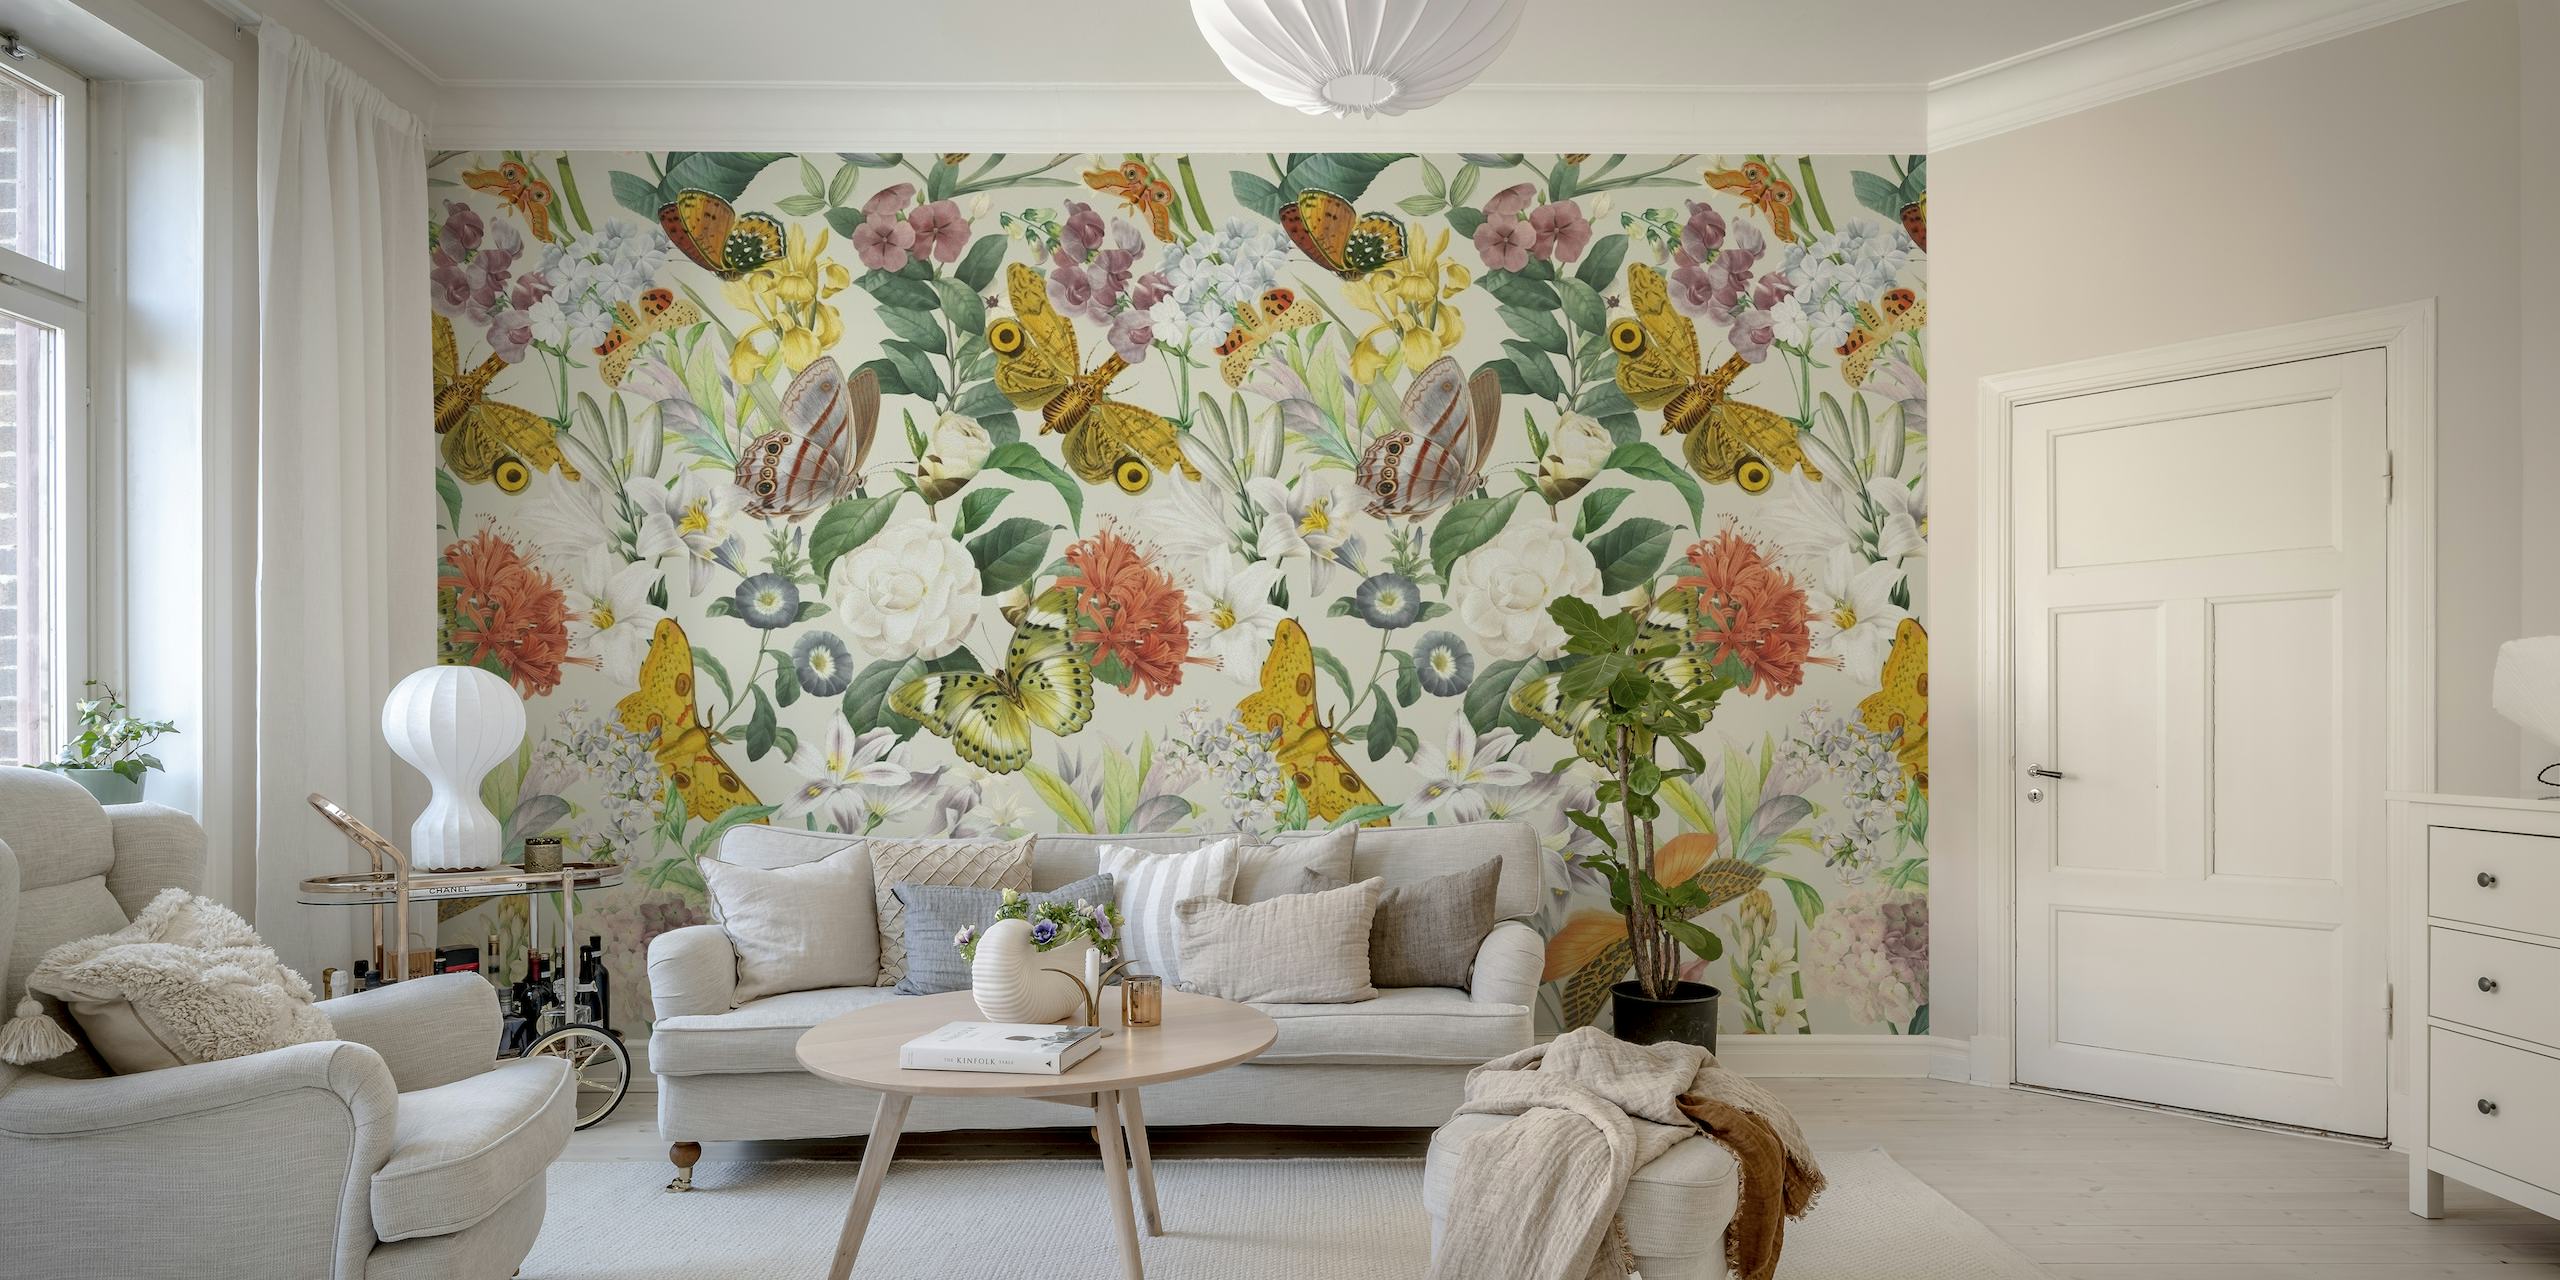 Zidni mural s prekrasnim uzorkom moljaca, leptira i cvjetnih elemenata u nježnim pastelnim bojama.